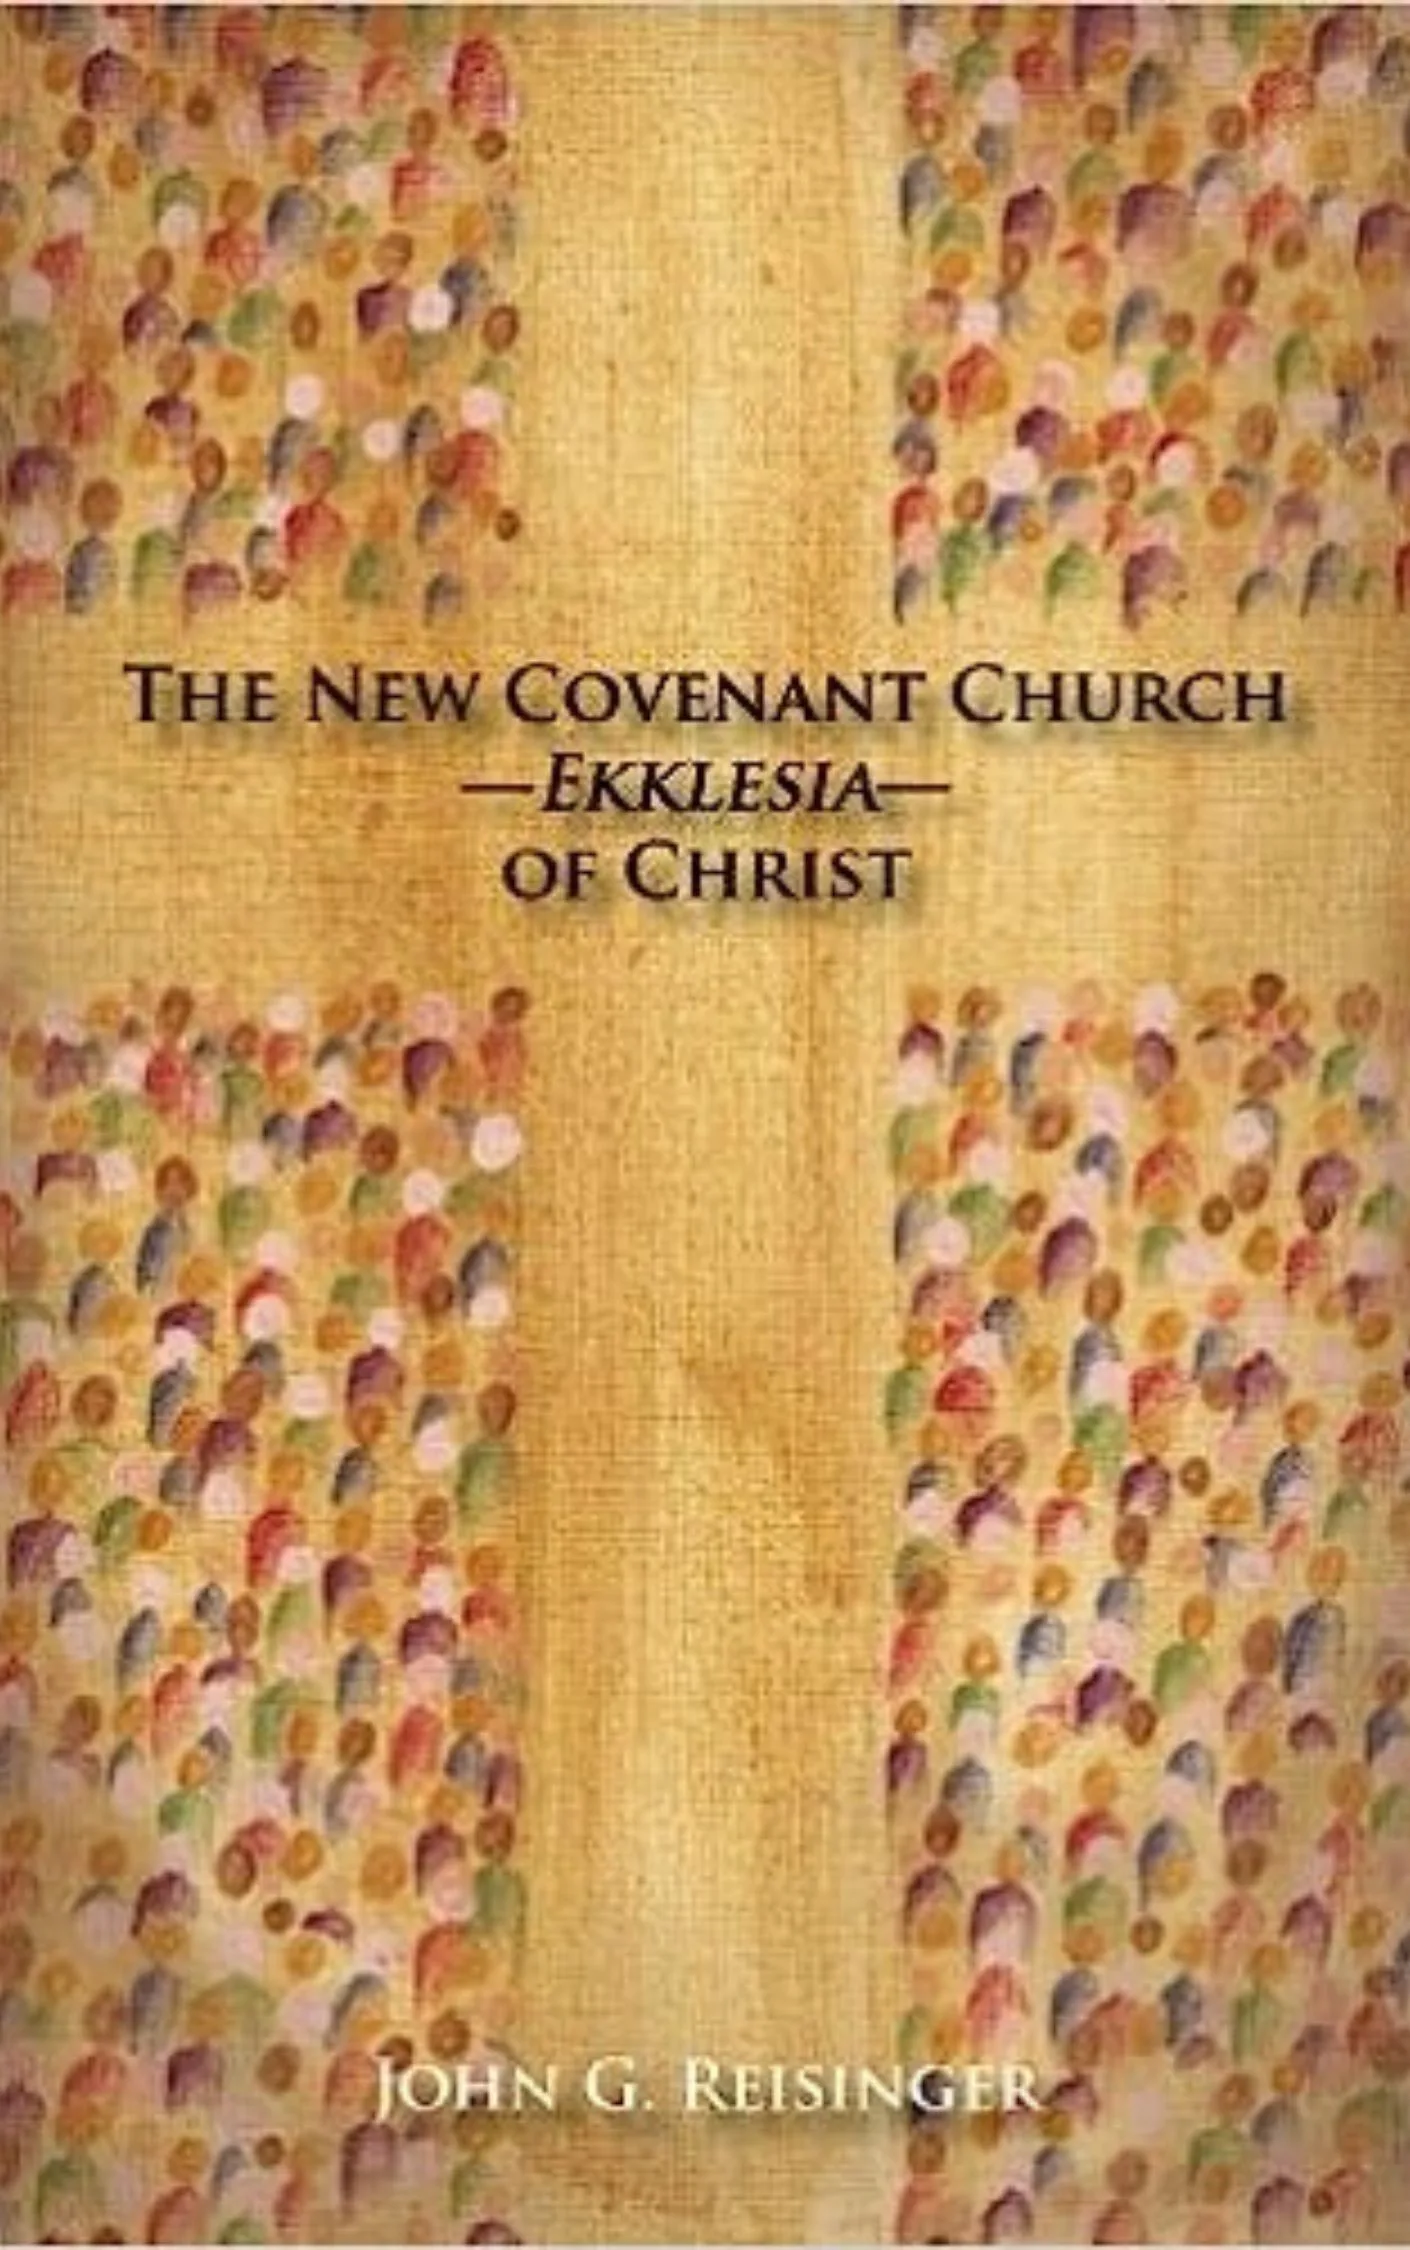 The New Covenant Church - Ekklesia - of Christ by John G. Reisinger